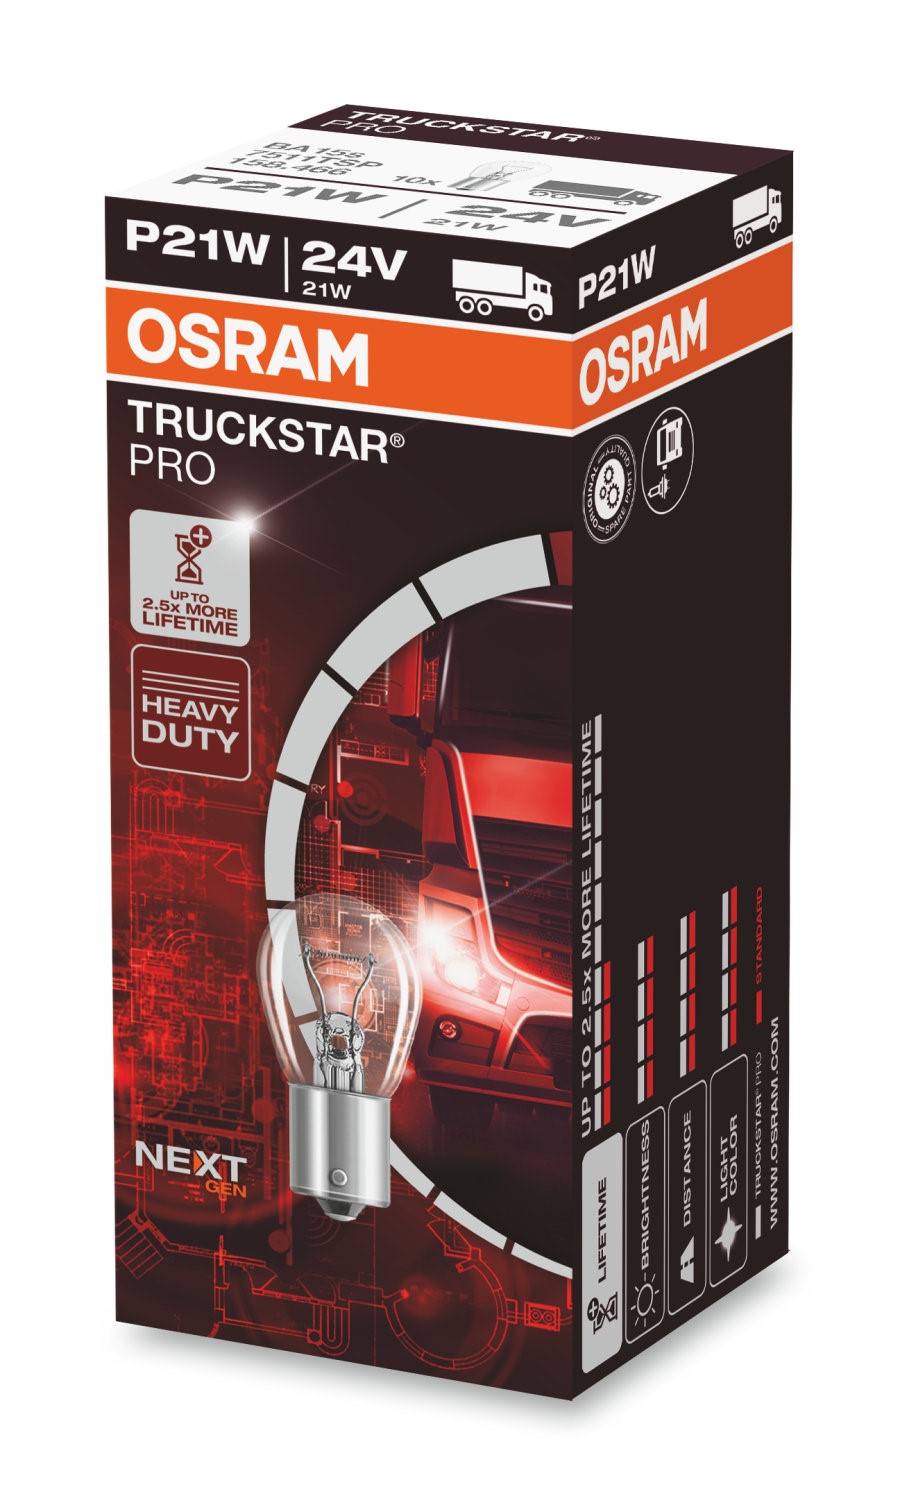 OSRAM TRUCKSTAR PRO +100% - BA15s 21W P21W 24V 